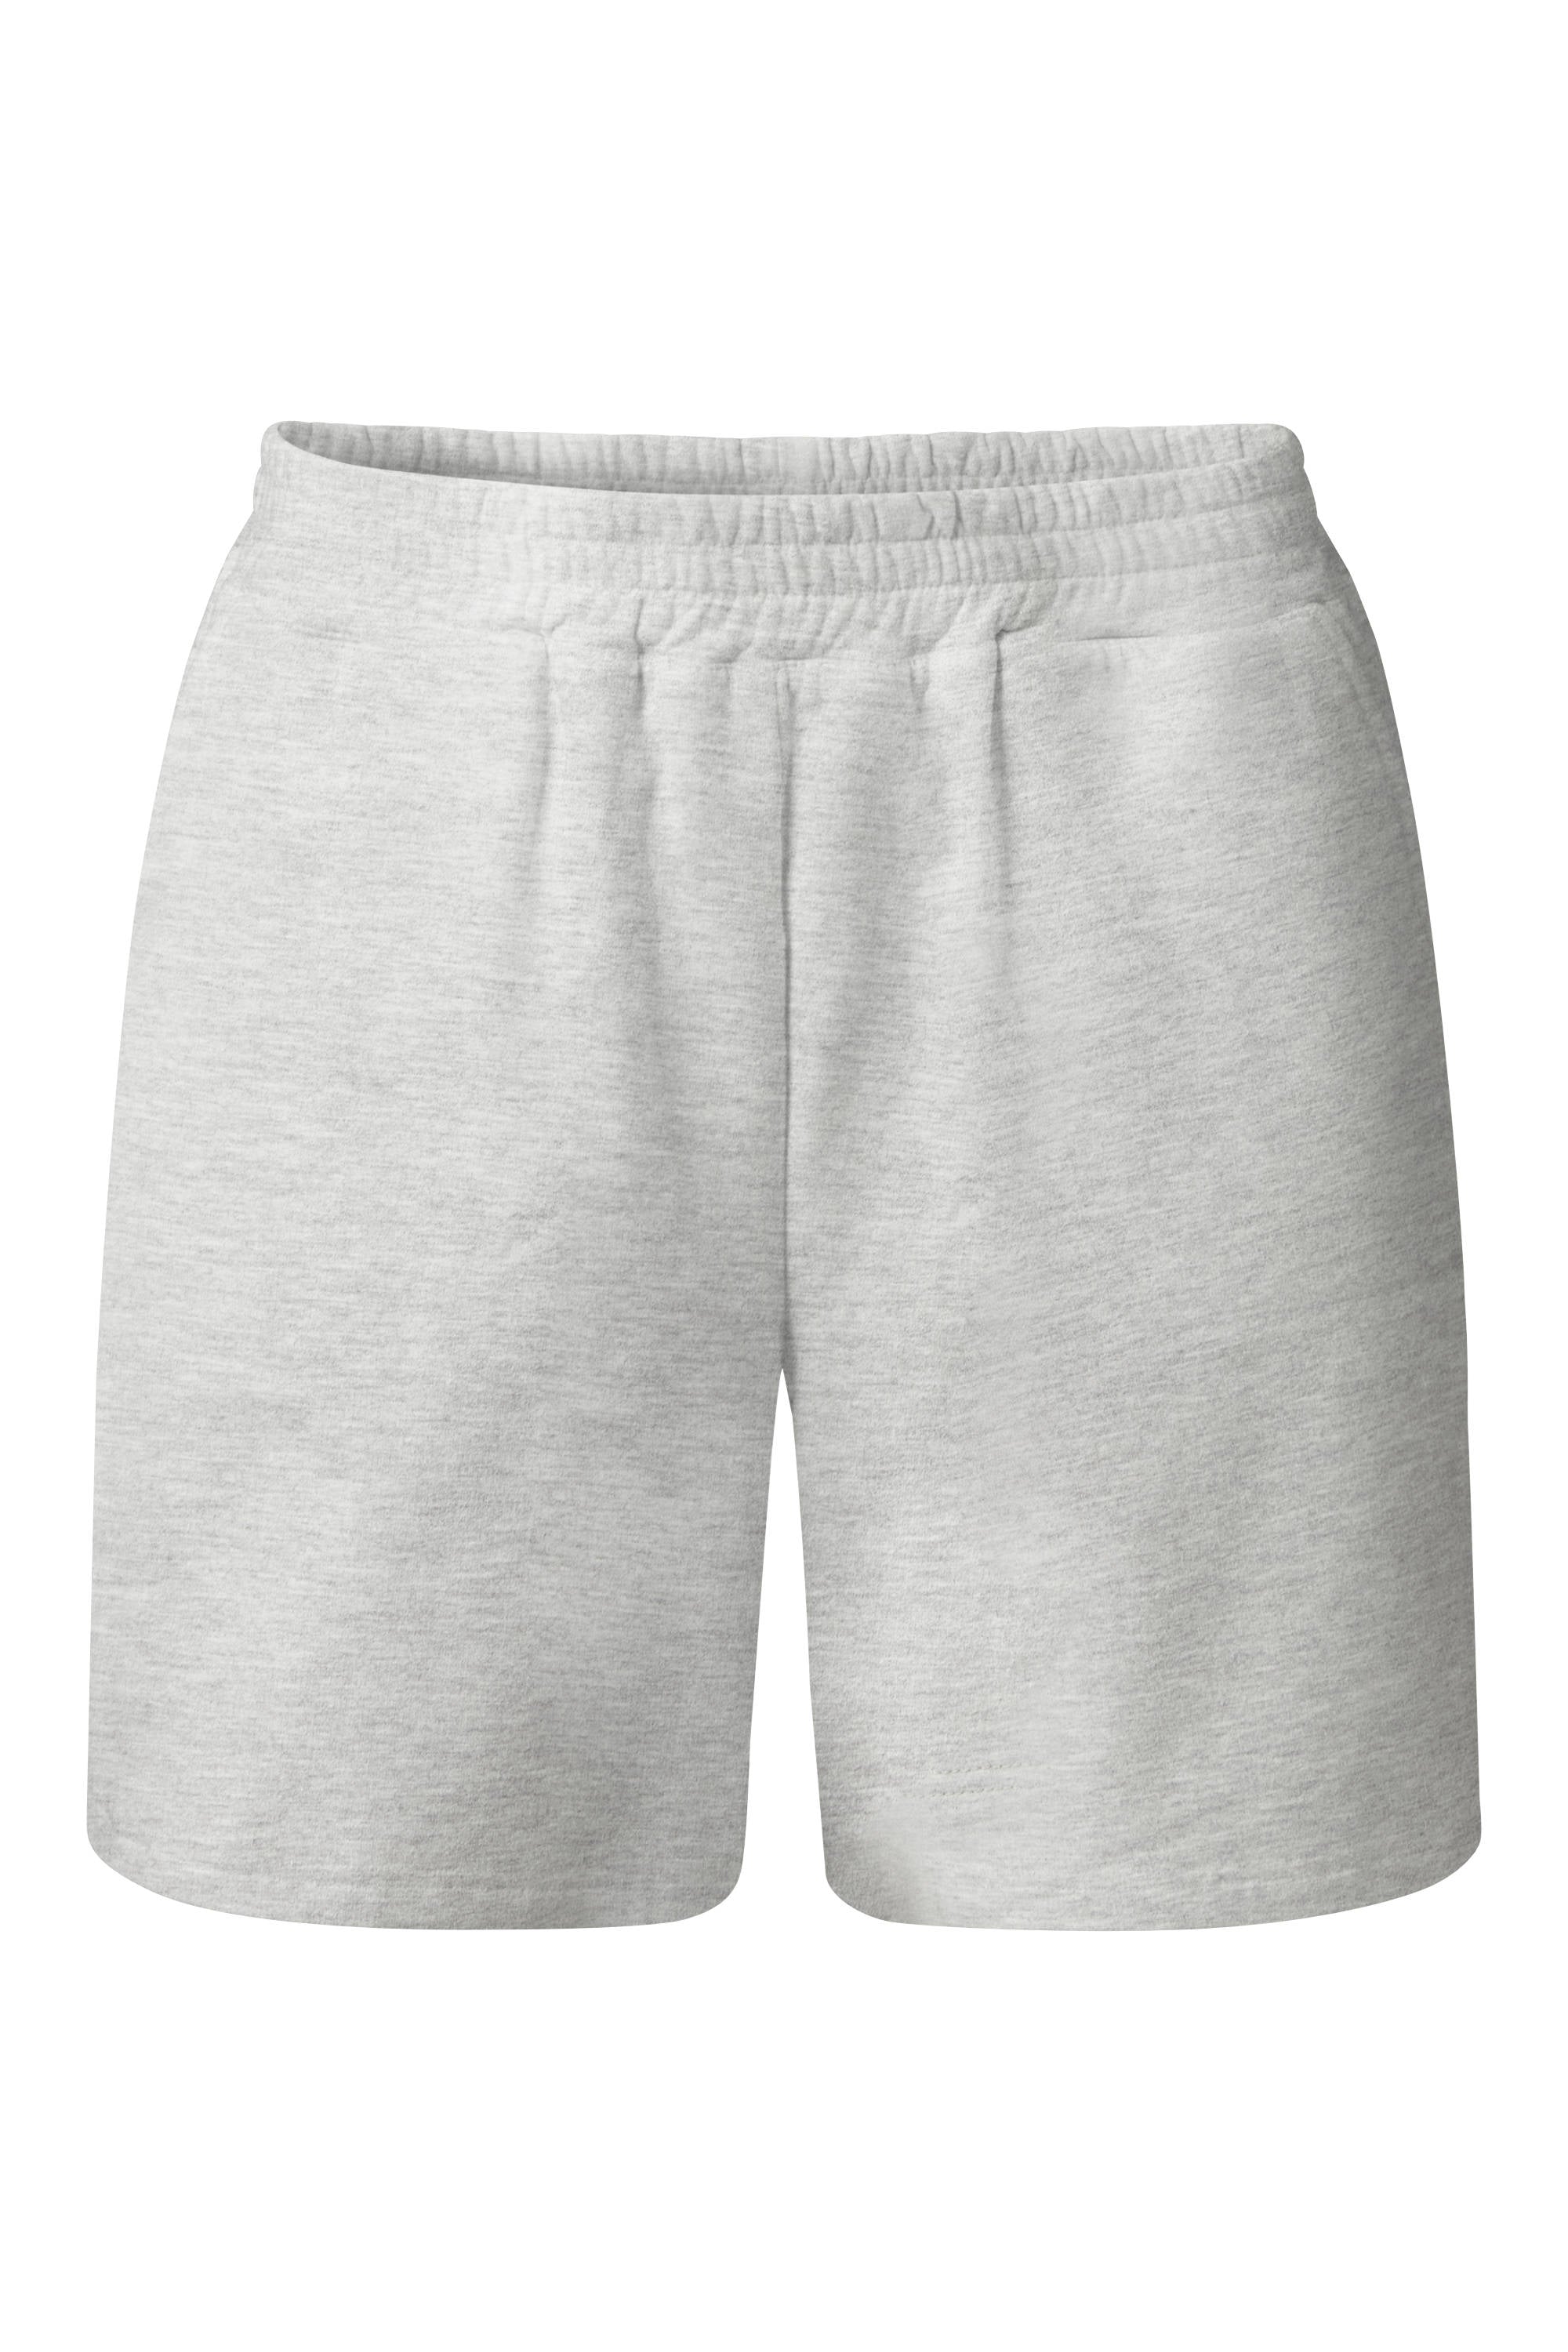 Baumwolle Shorts in grau auf weißem Hintergrund.